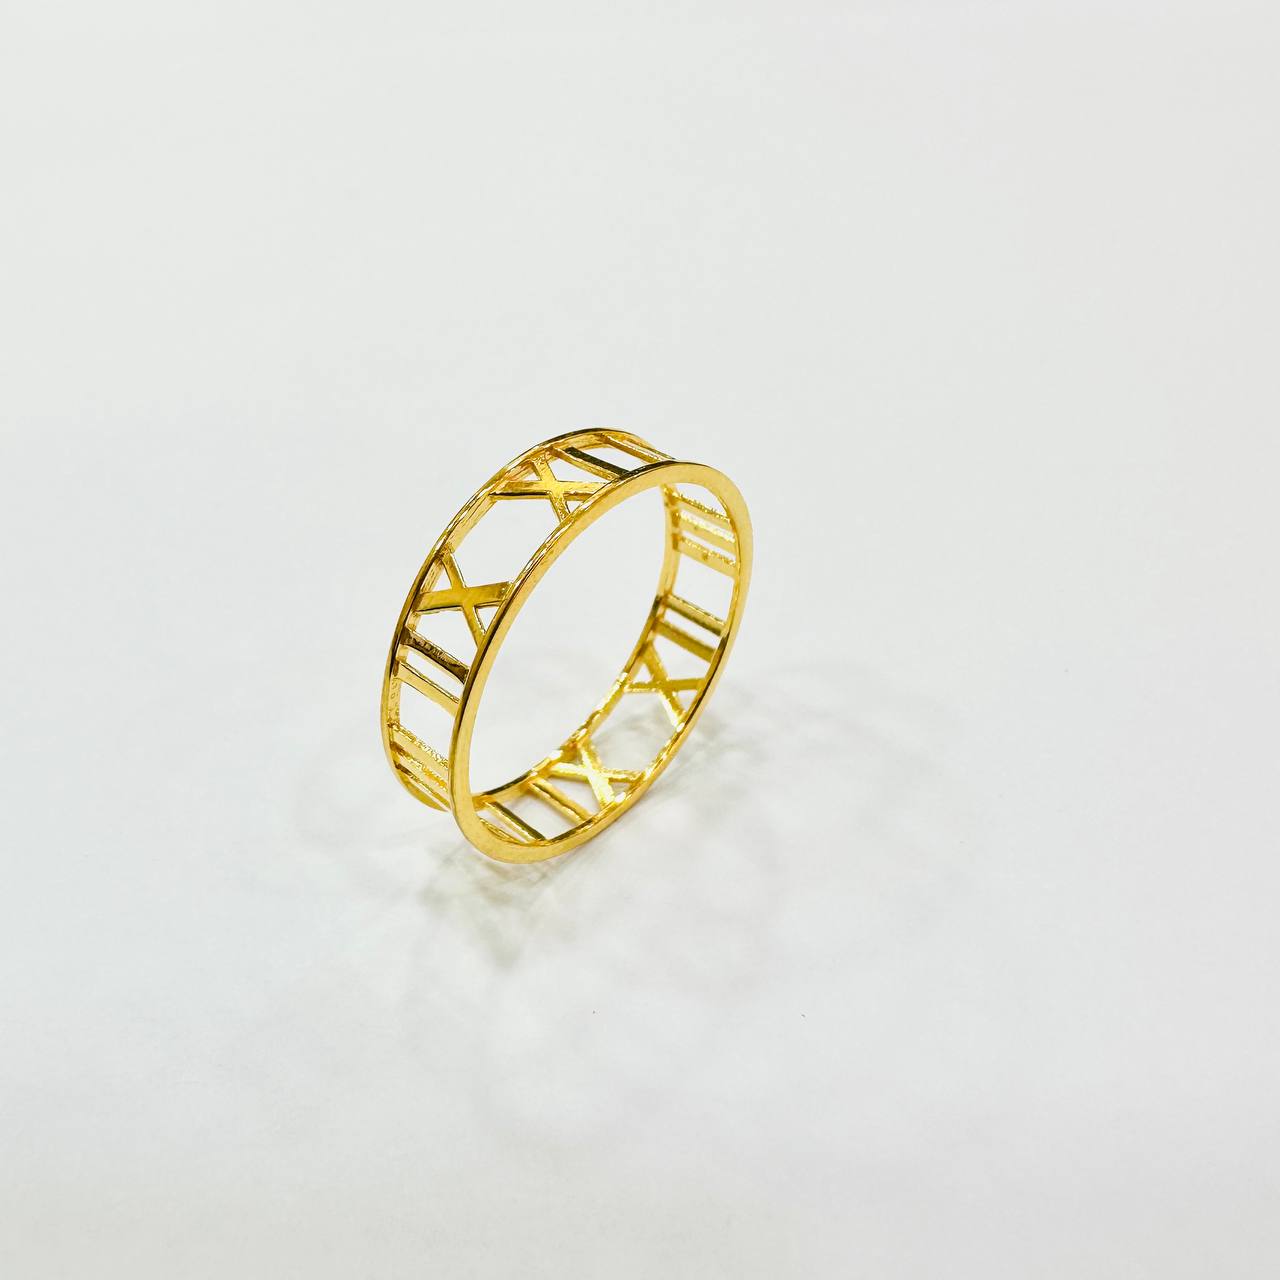 22k / 916 Gold Roman Ring Light Weight-916 gold-Best Gold Shop